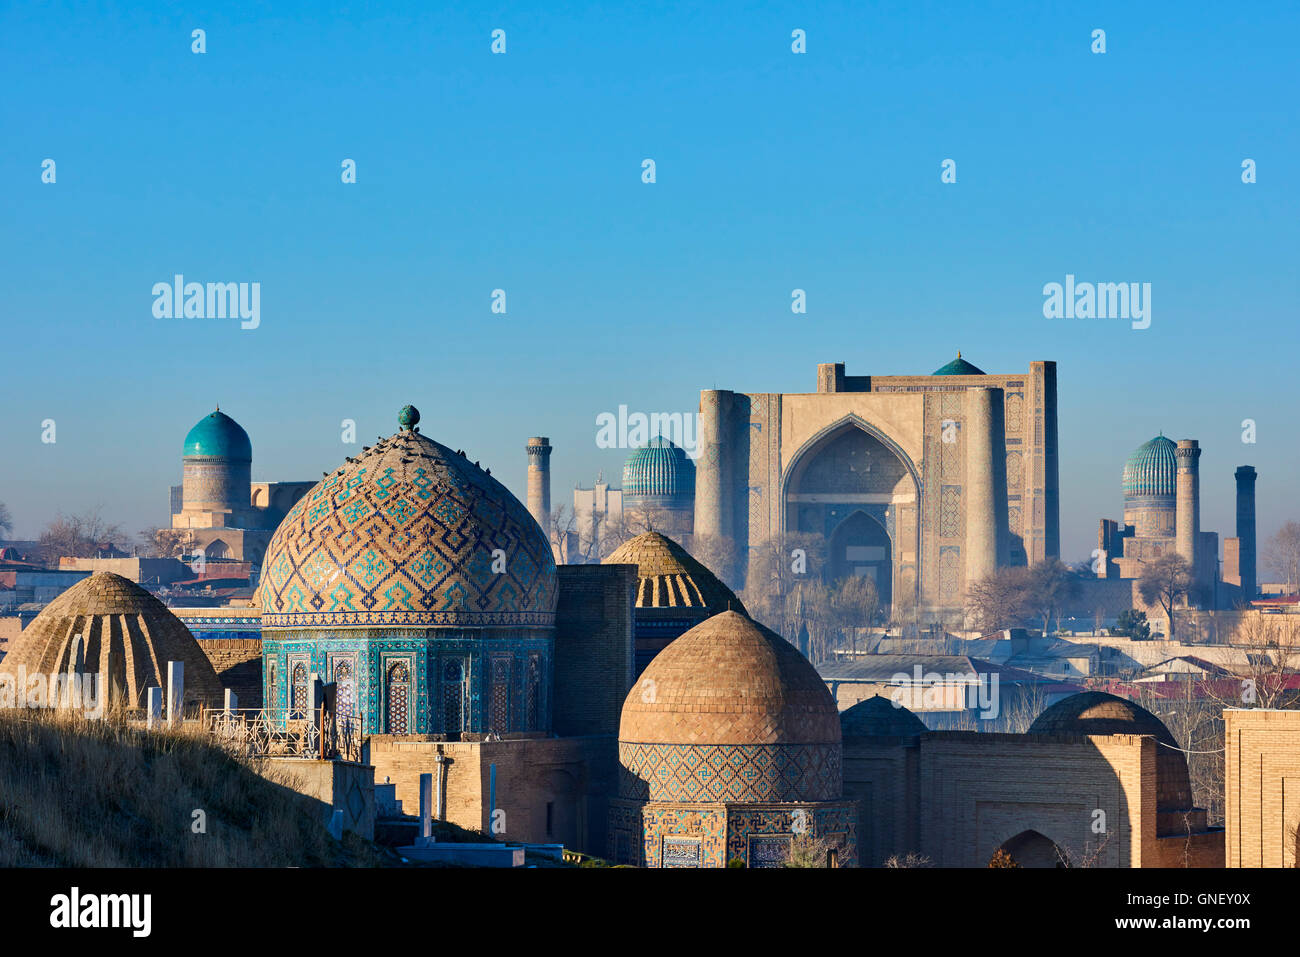 L'Ouzbékistan, Samarkand, Patrimoine Mondial de l'UNESCO, le Reghistan, Shah i Zinda, le mausolée de la mosquée Bibi Khanoum Banque D'Images